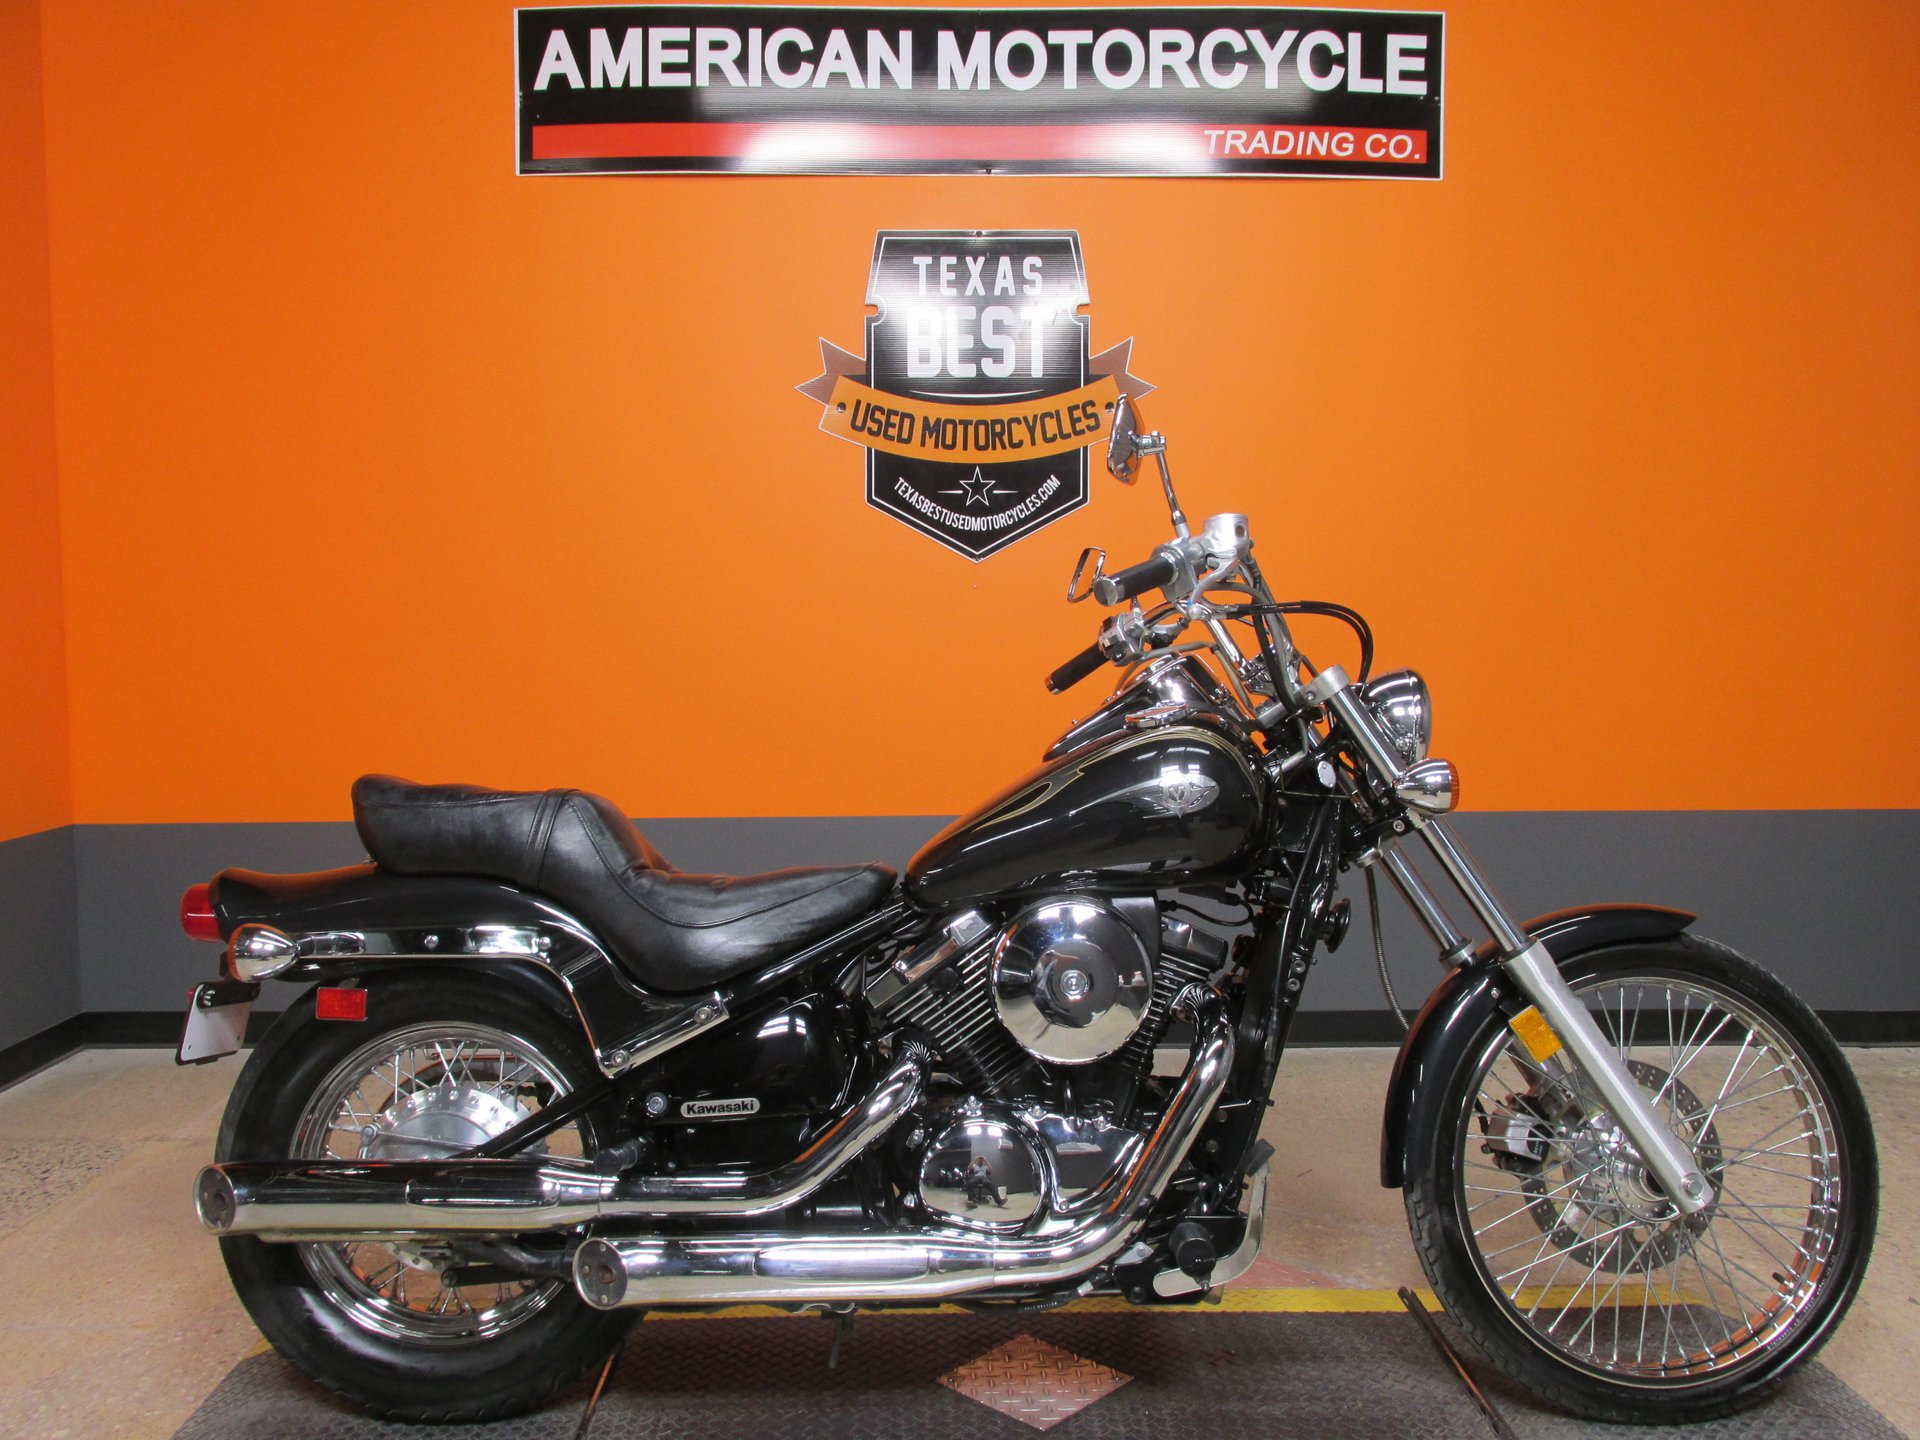 2003 Kawasaki Vulcan | American Motorcycle Company - Used Harley Motorcycles